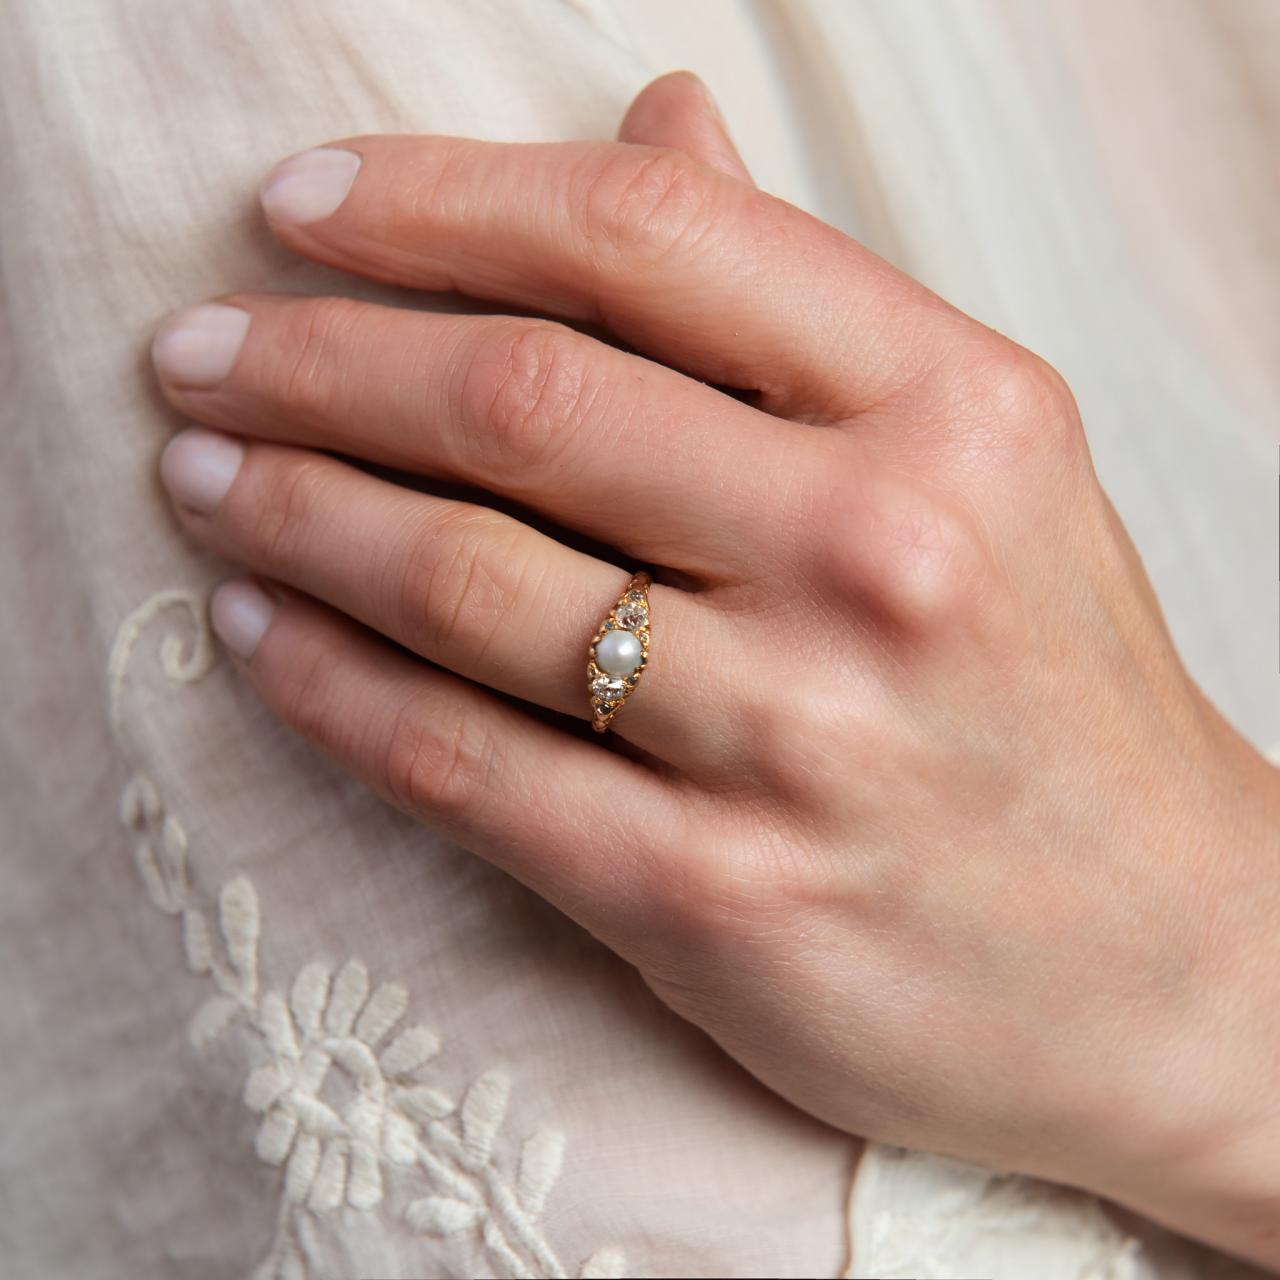 Beautiful pearl & diamond Victorian ring